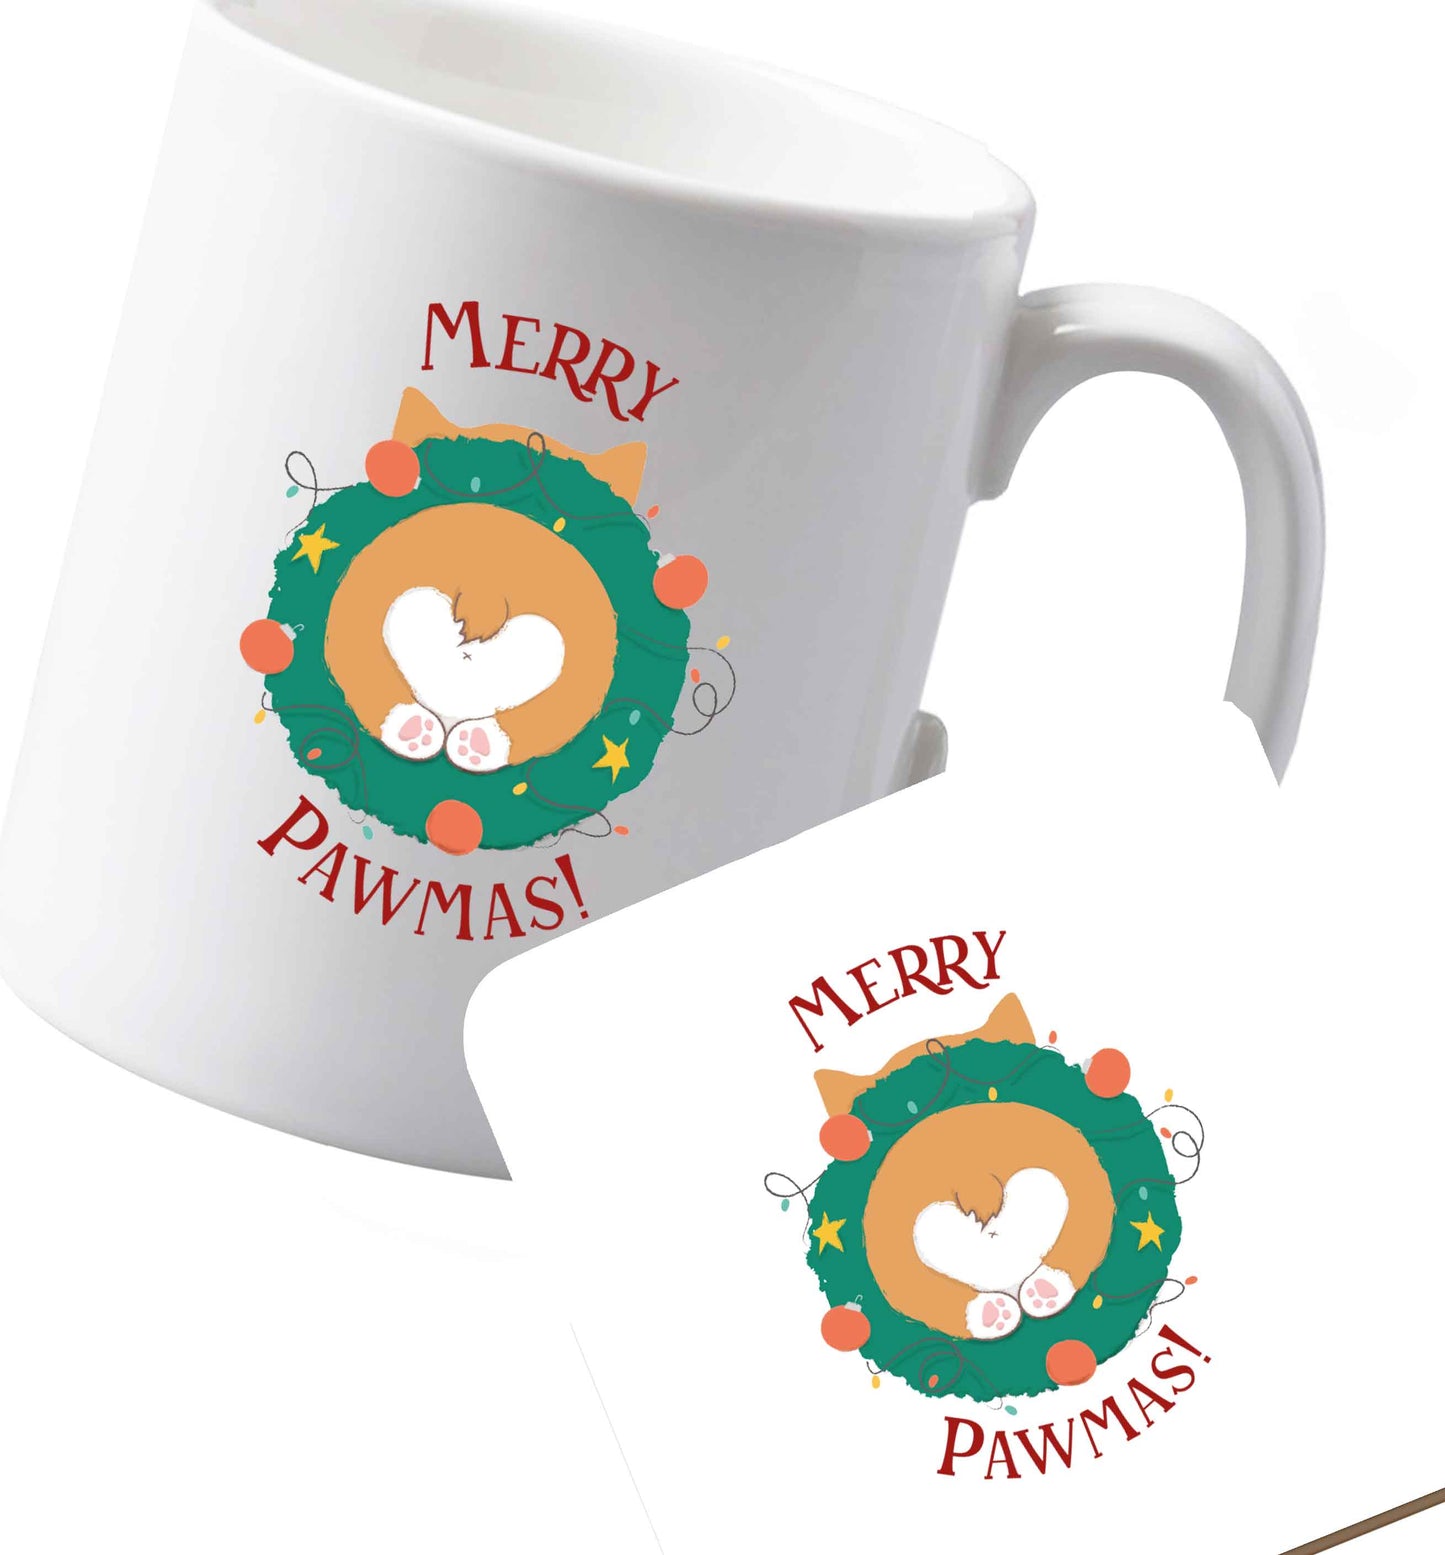 10 oz Ceramic mug and coaster Merry Pawmas both sides